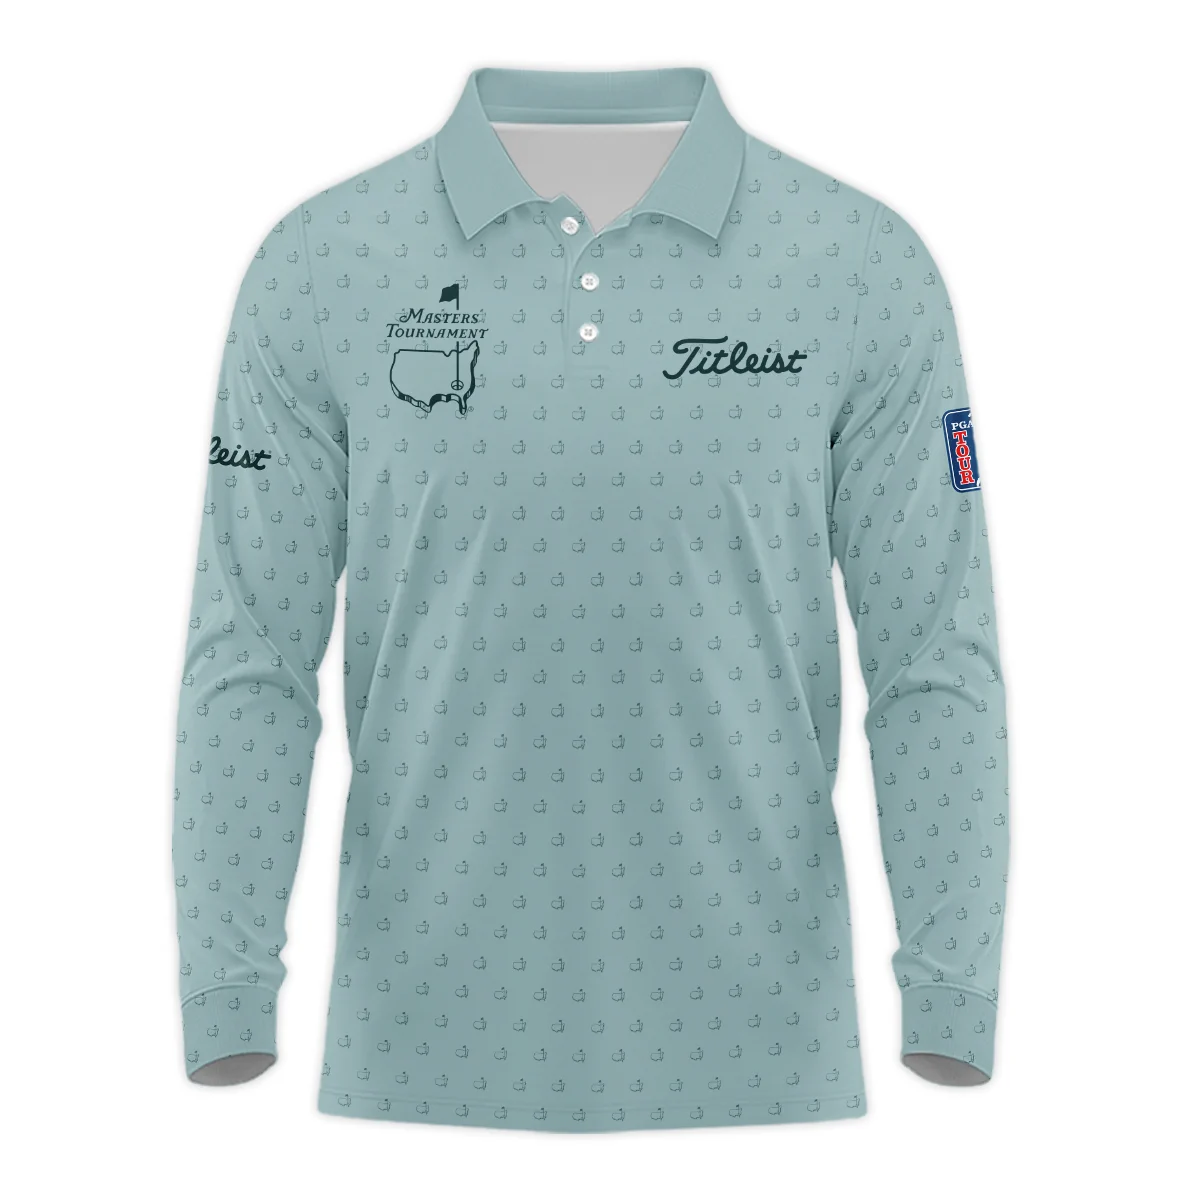 Golf Pattern Masters Tournament Titleist Zipper Hoodie Shirt Cyan Pattern All Over Print Zipper Hoodie Shirt